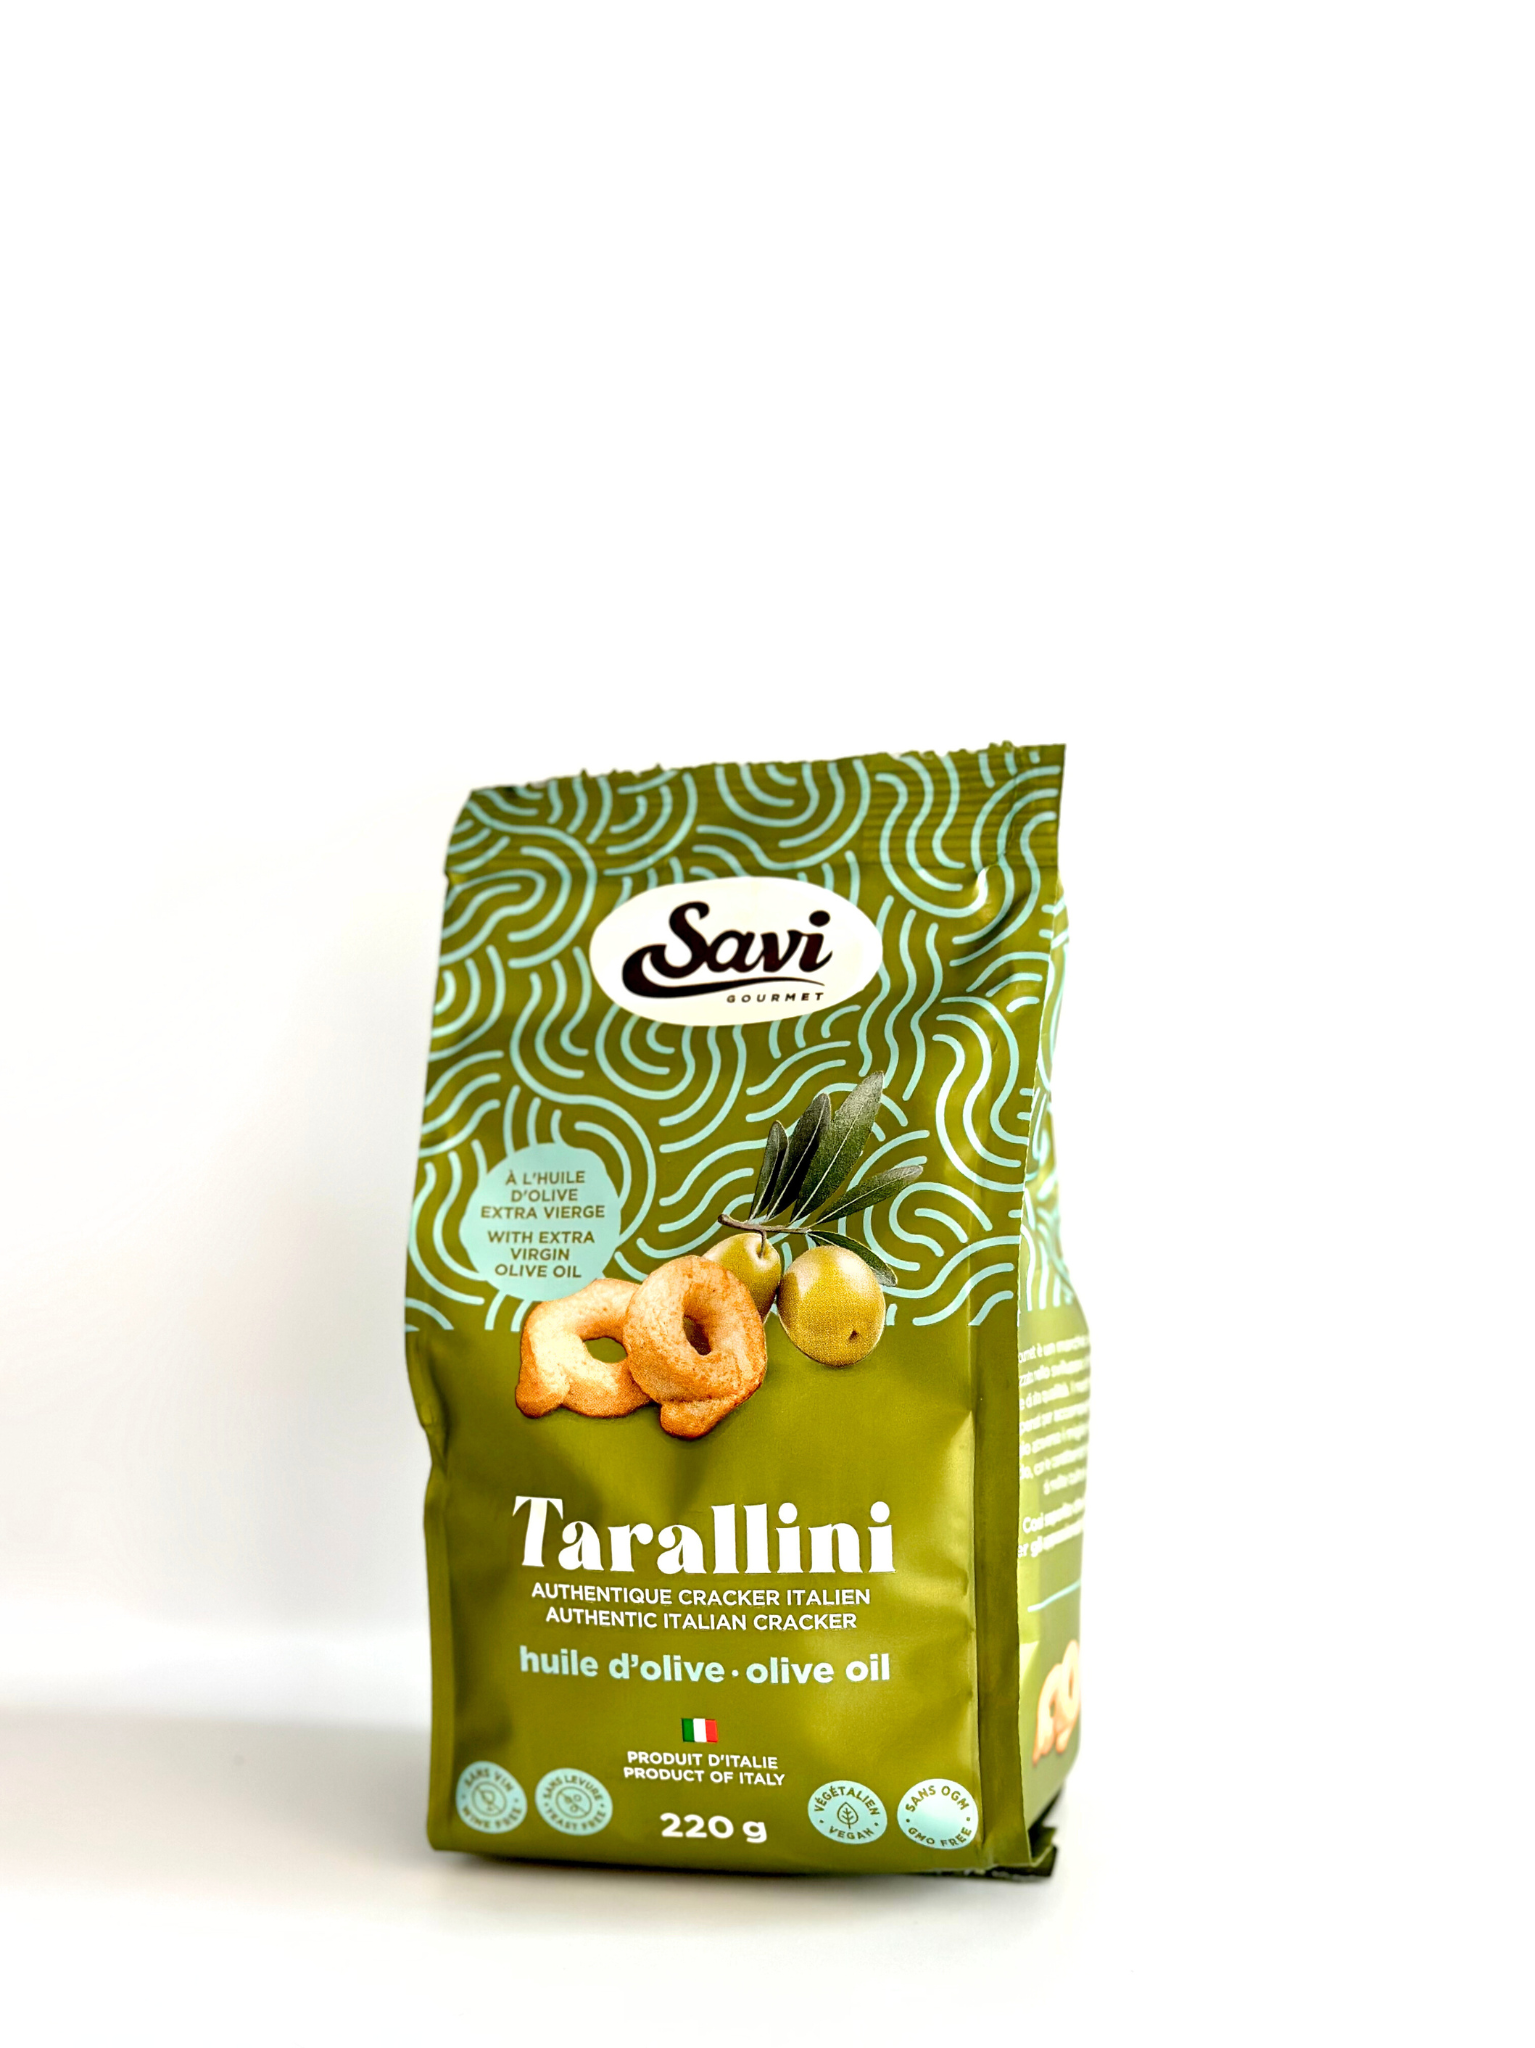 Tarallini Olive oil